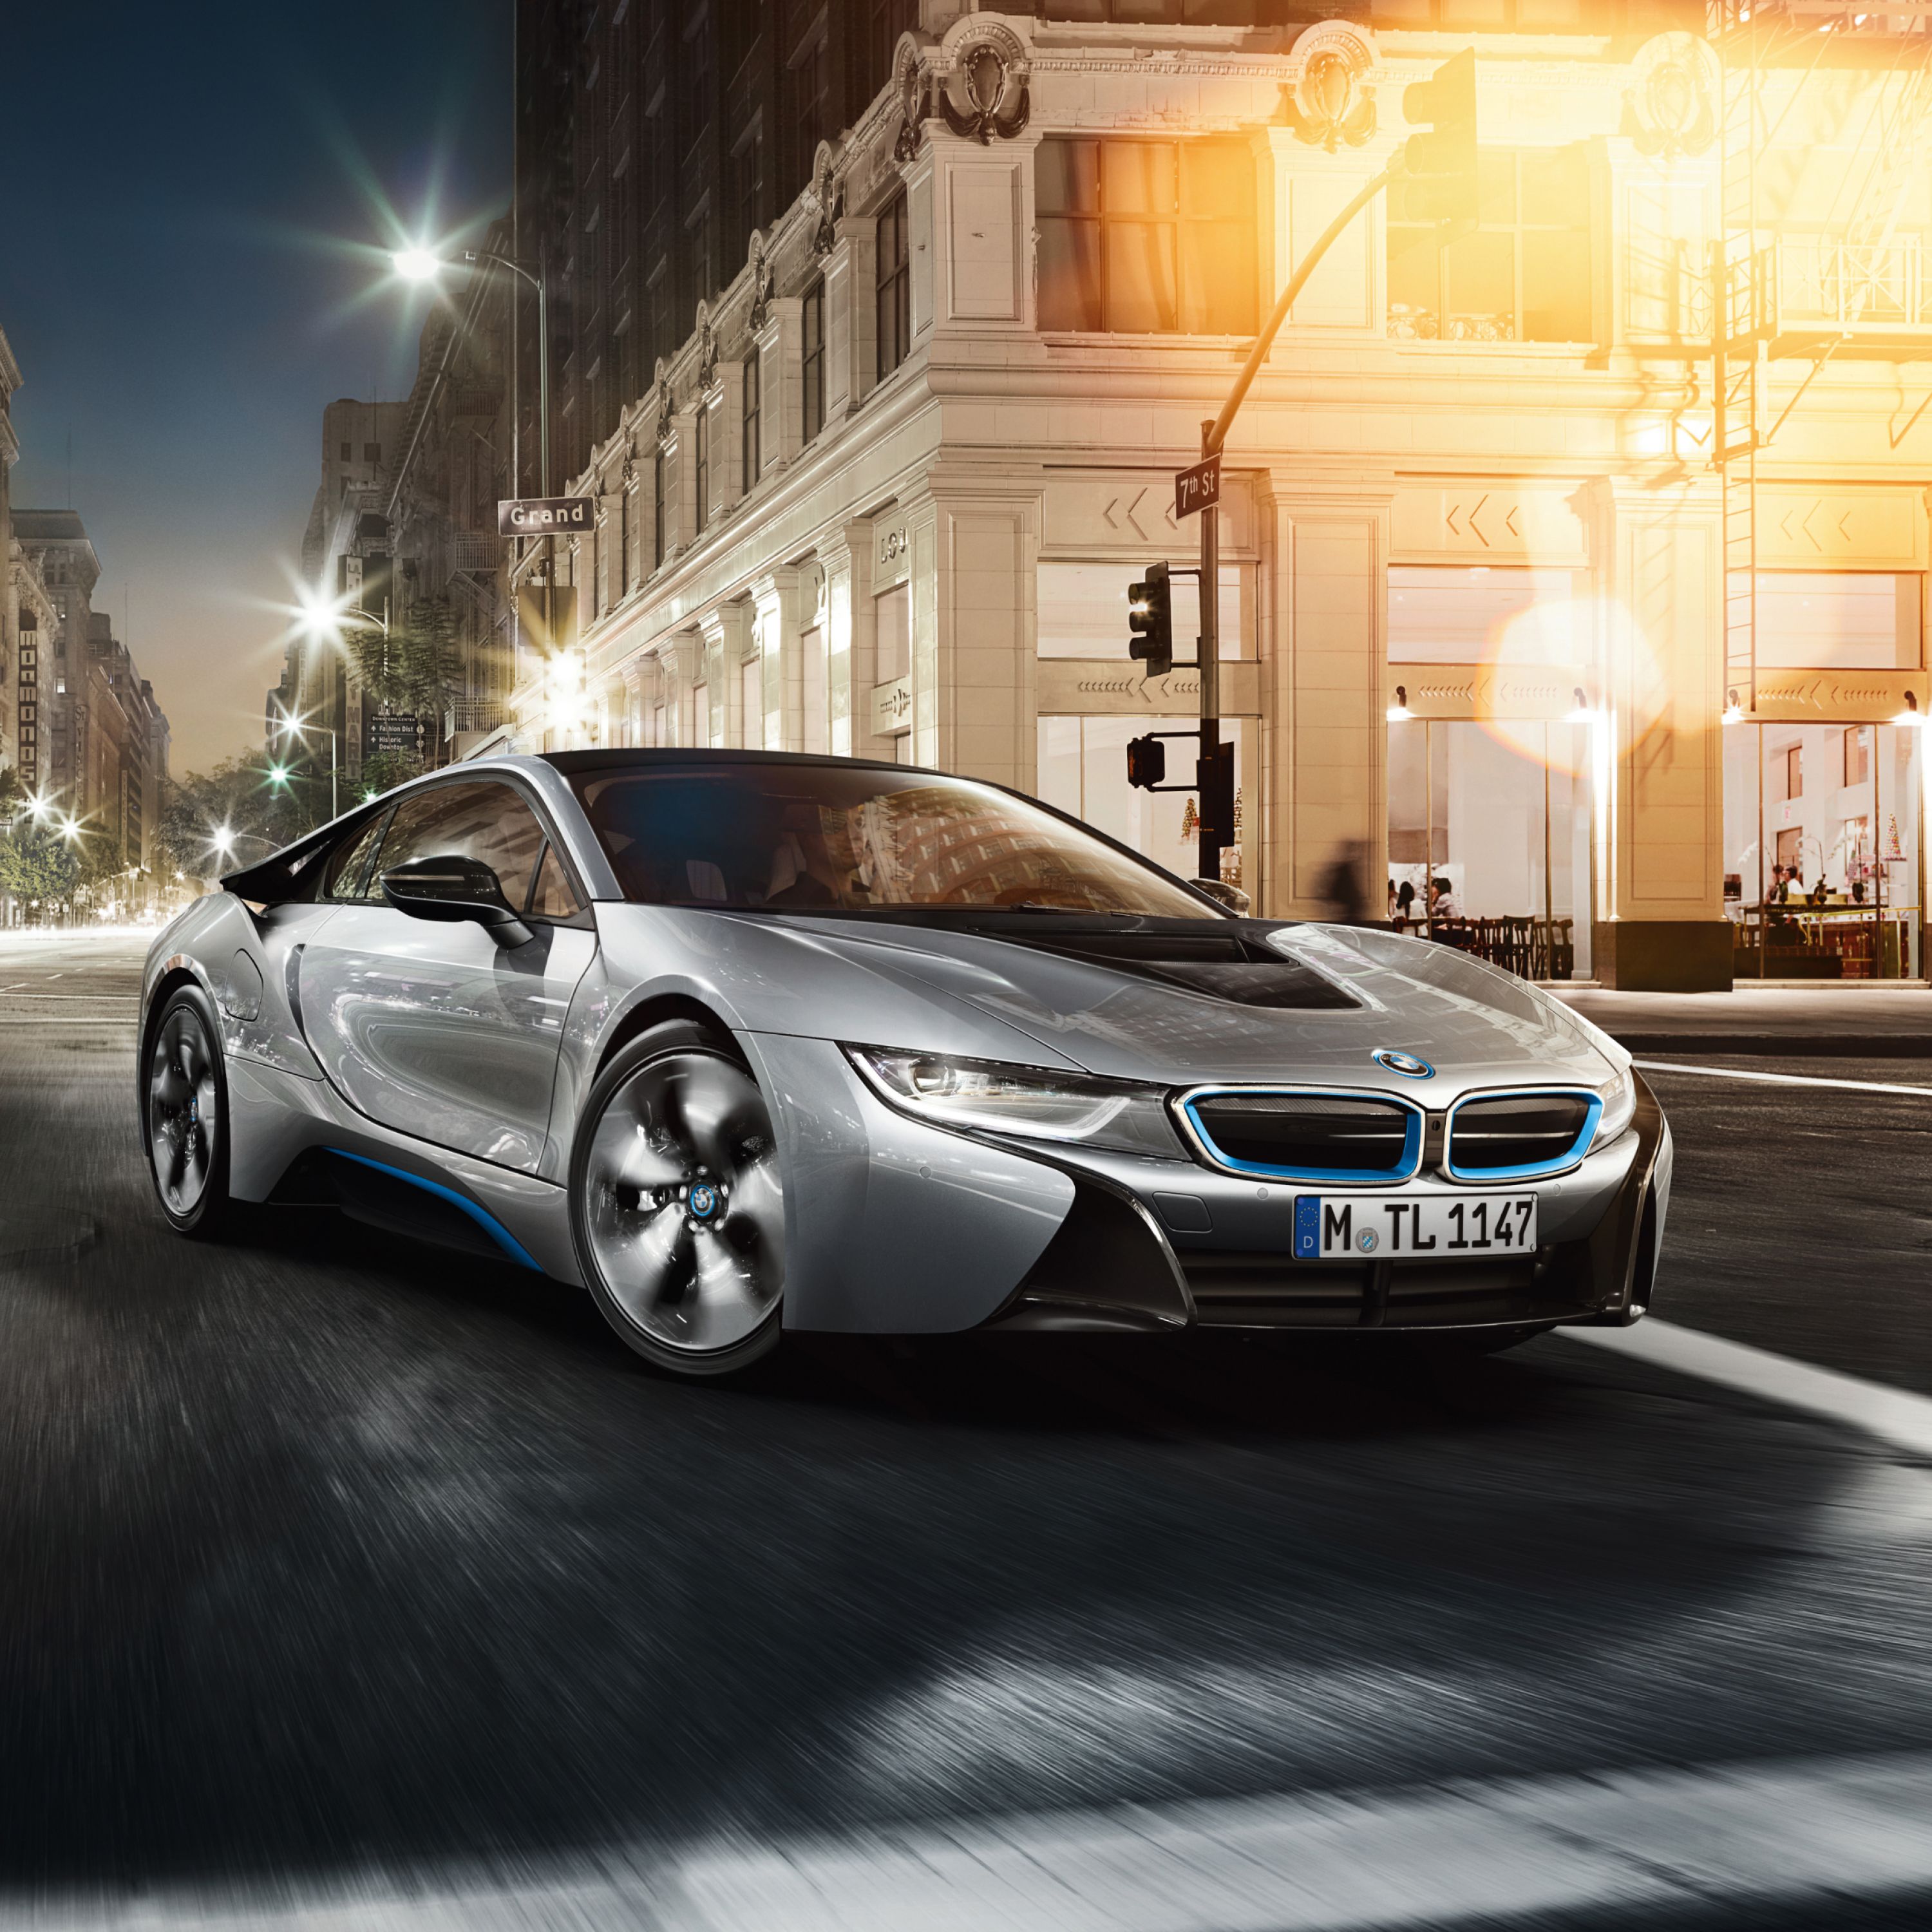 Сребрист BMW i8 Plug-in хибриден спортен автомобил пред гранд хотел в голям град.